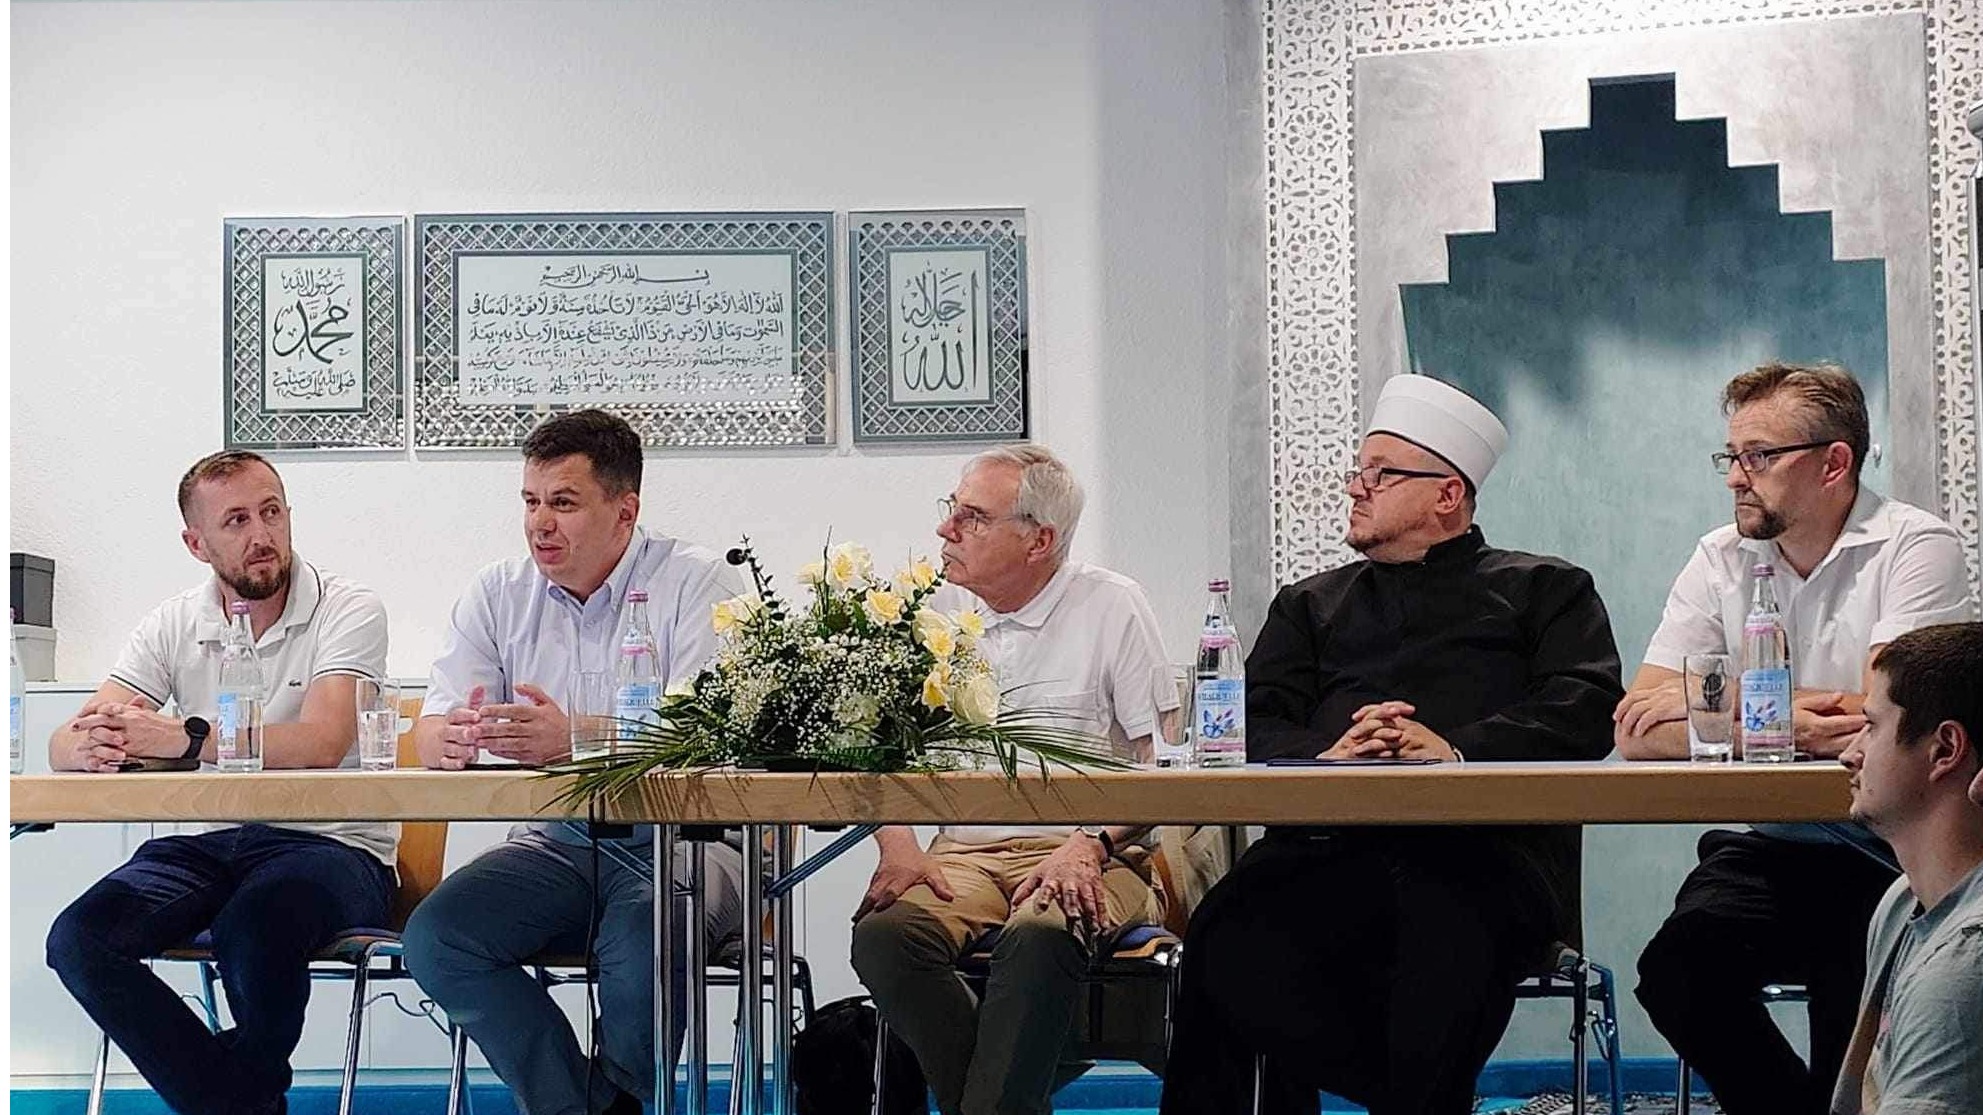 Njemačka: Održana promocija projekta "Pod nebom vedre vjere: Islam i Evropa u iskustvu Bosne"